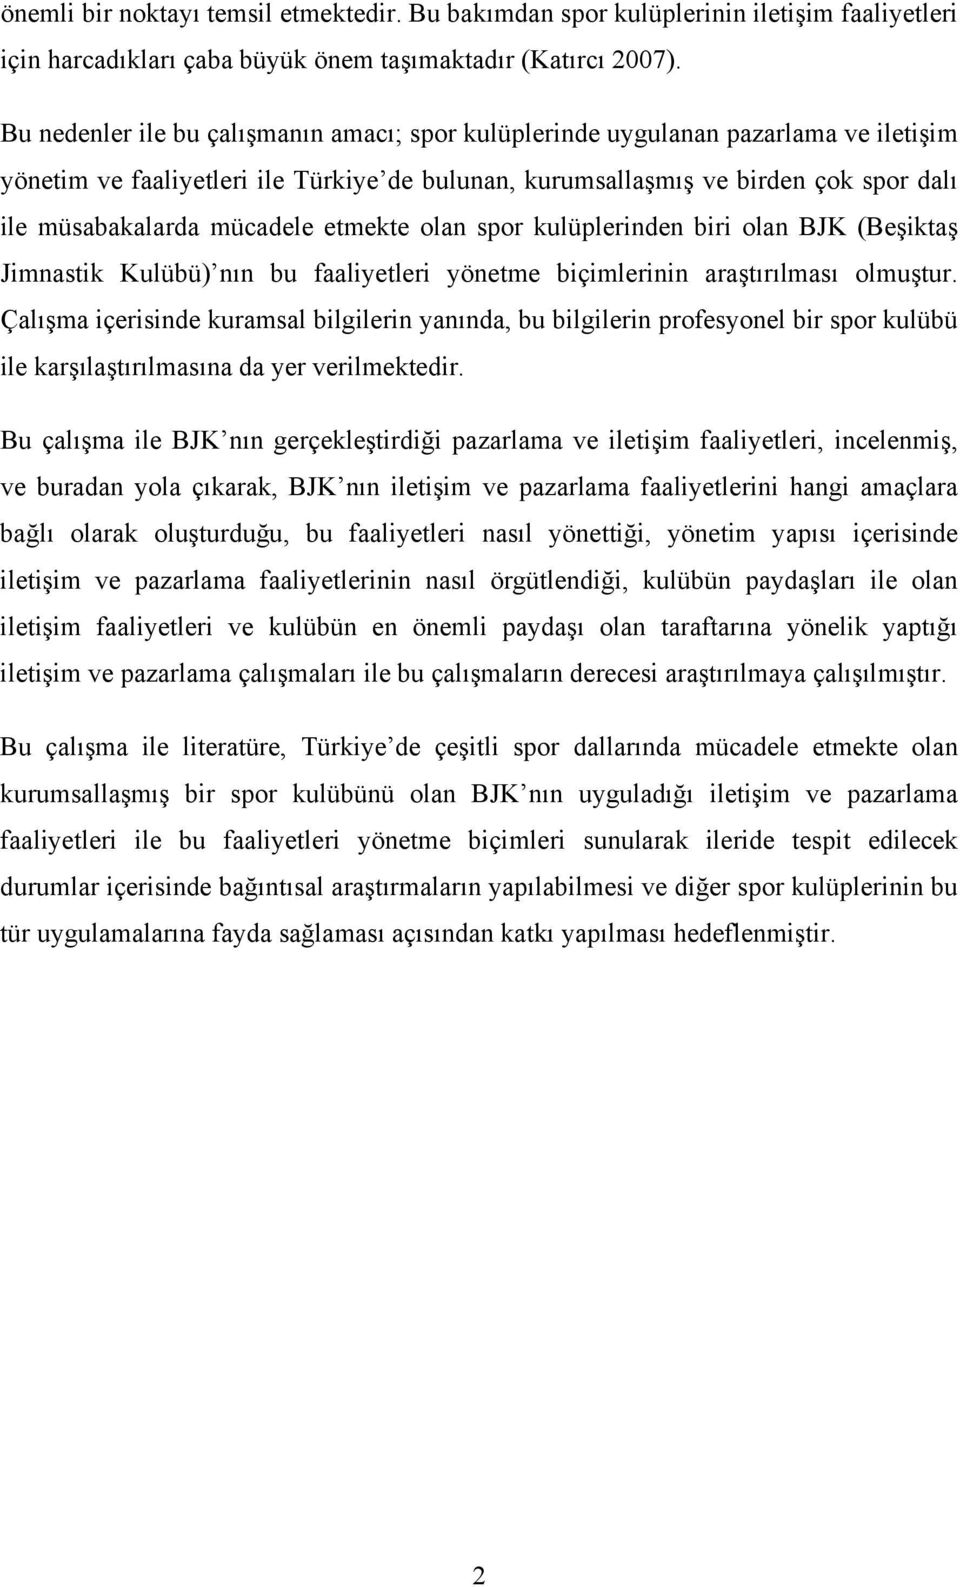 mücadele etmekte olan spor kulüplerinden biri olan BJK (Beşiktaş Jimnastik Kulübü) nın bu faaliyetleri yönetme biçimlerinin araştırılması olmuştur.